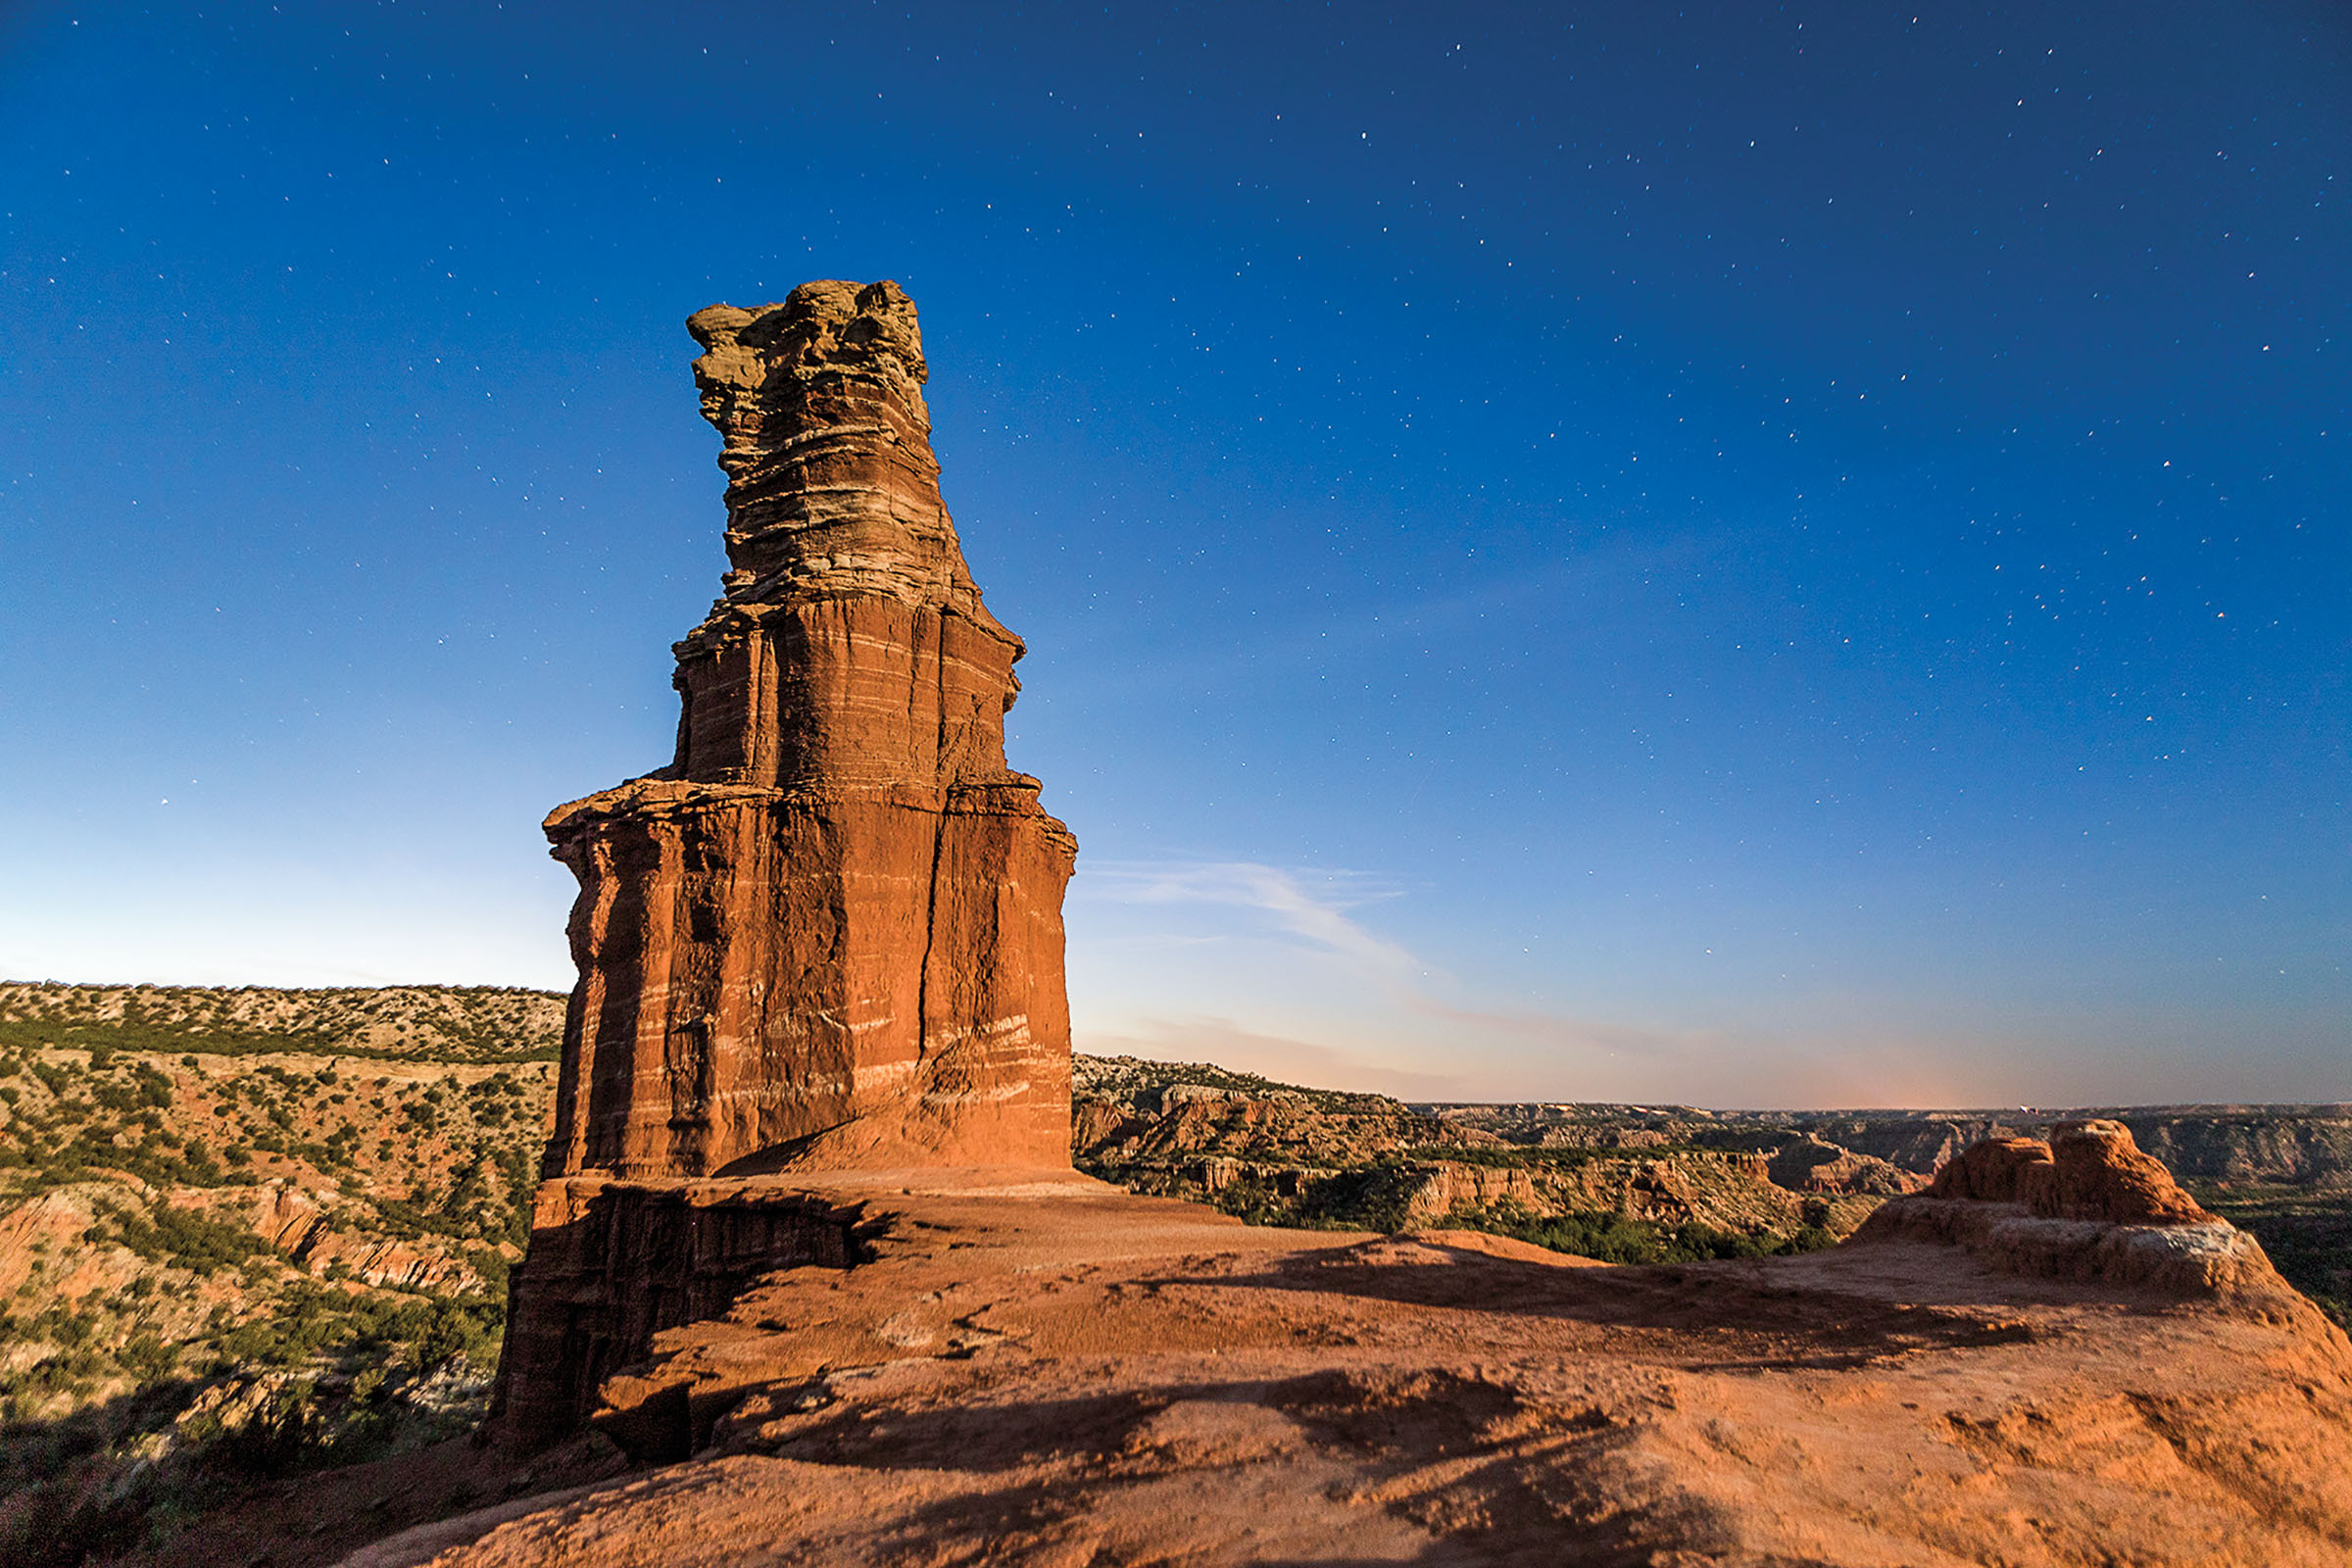 A tall, golden-brown rock formation amid a desert landscape under deep blue sky